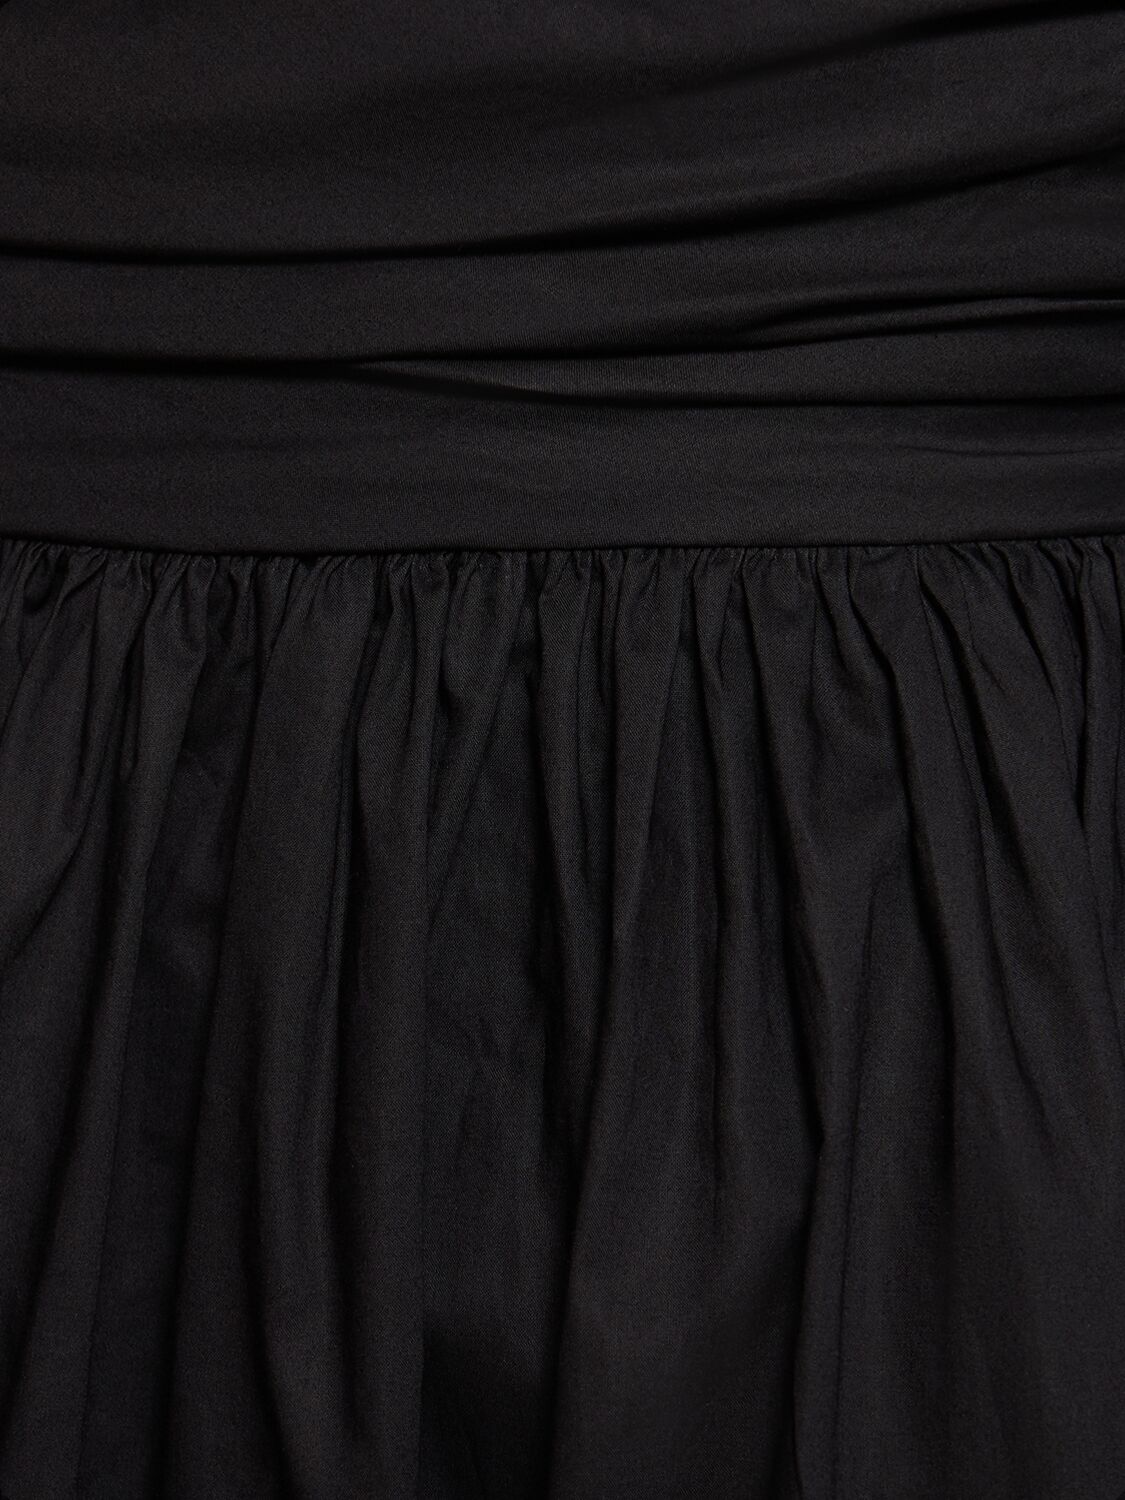 Shop Matteau Strapless Cotton Maxi Dress In Black